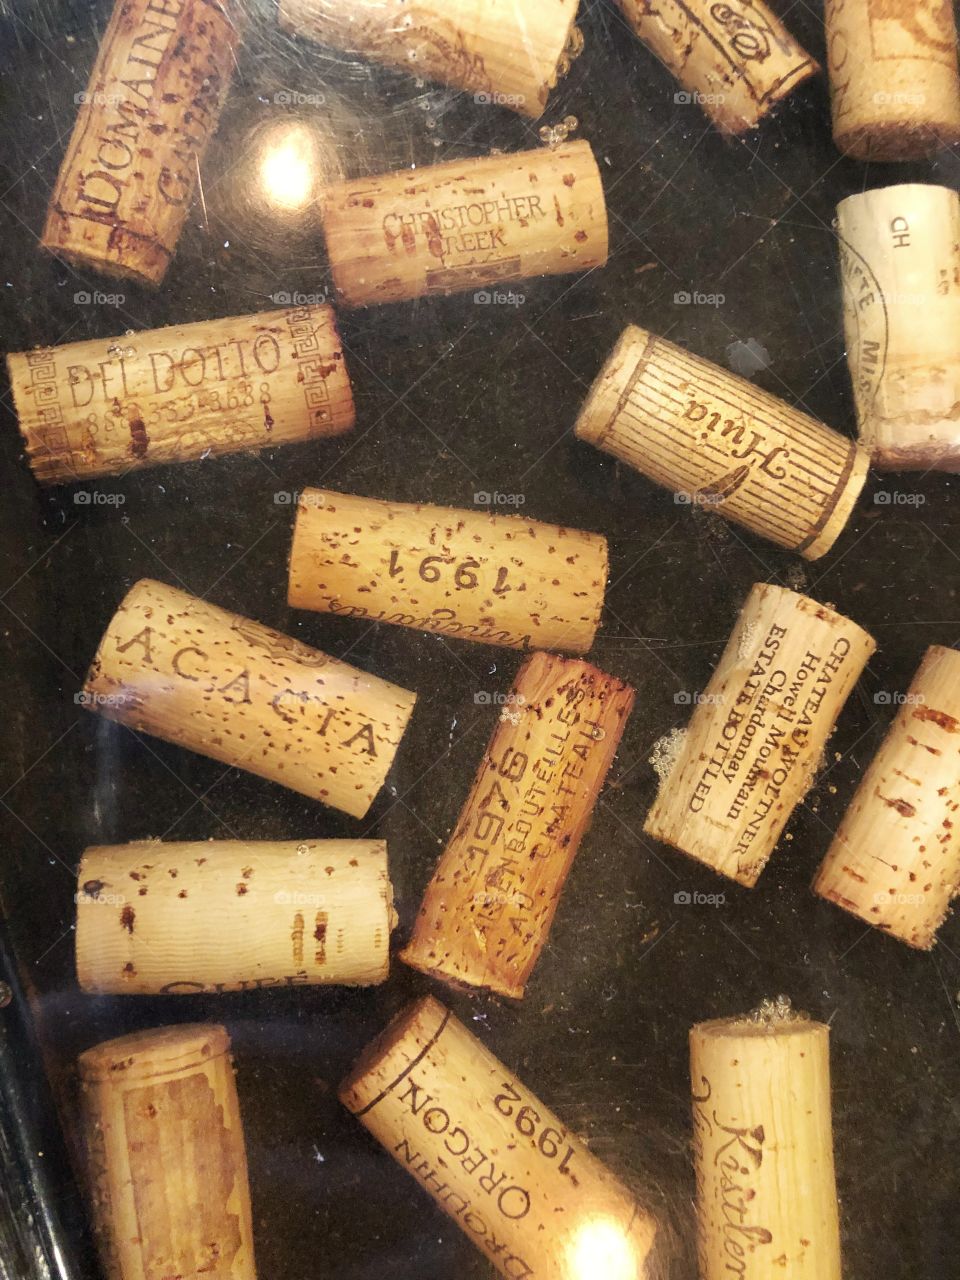 Wine corks under glass